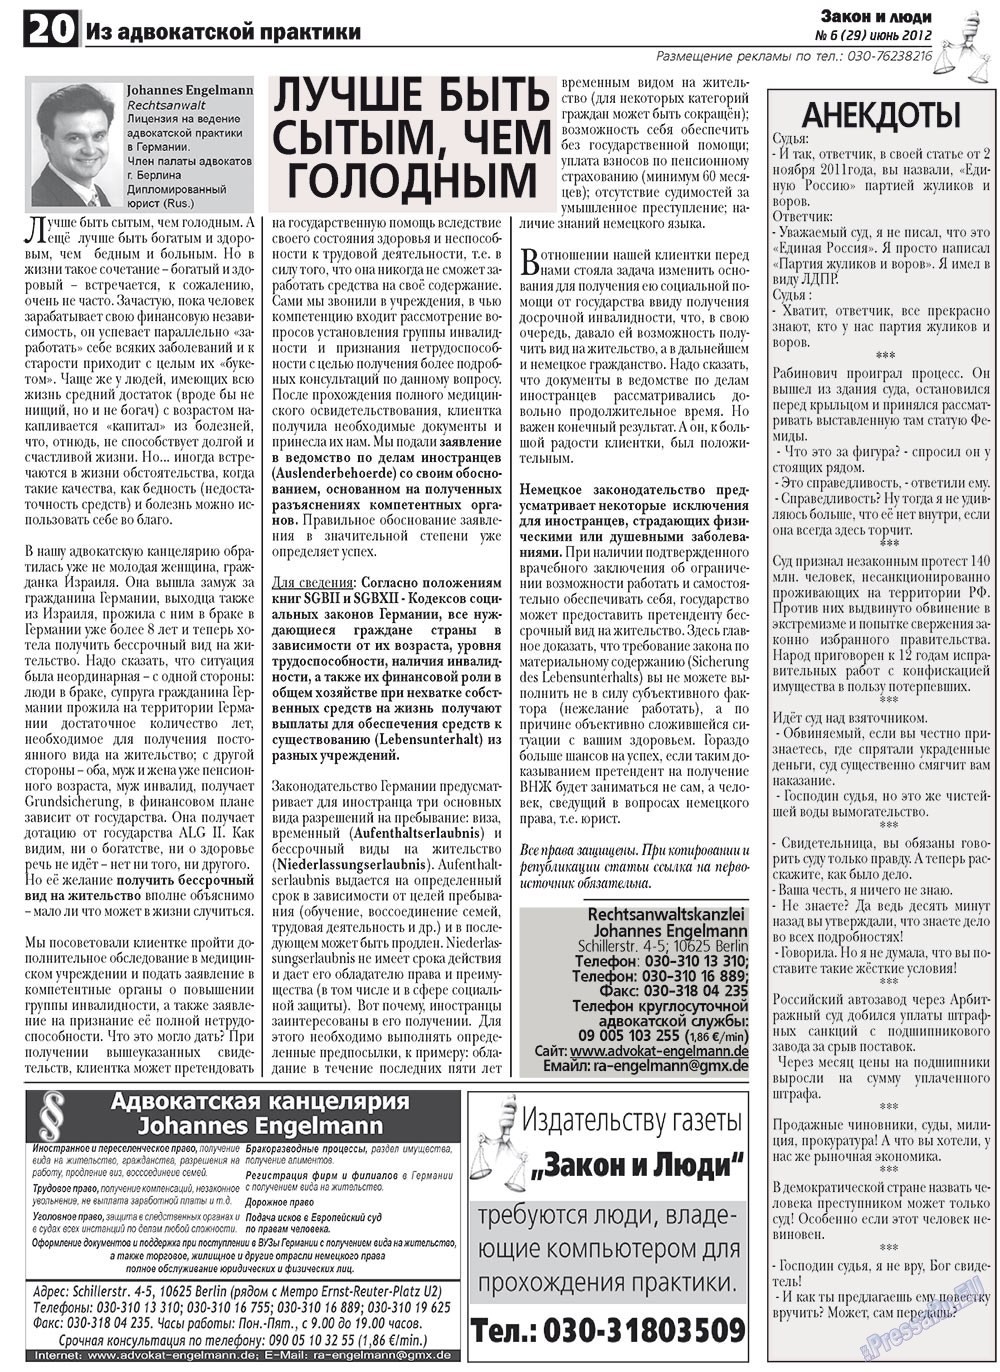 Закон и люди, газета. 2012 №6 стр.20